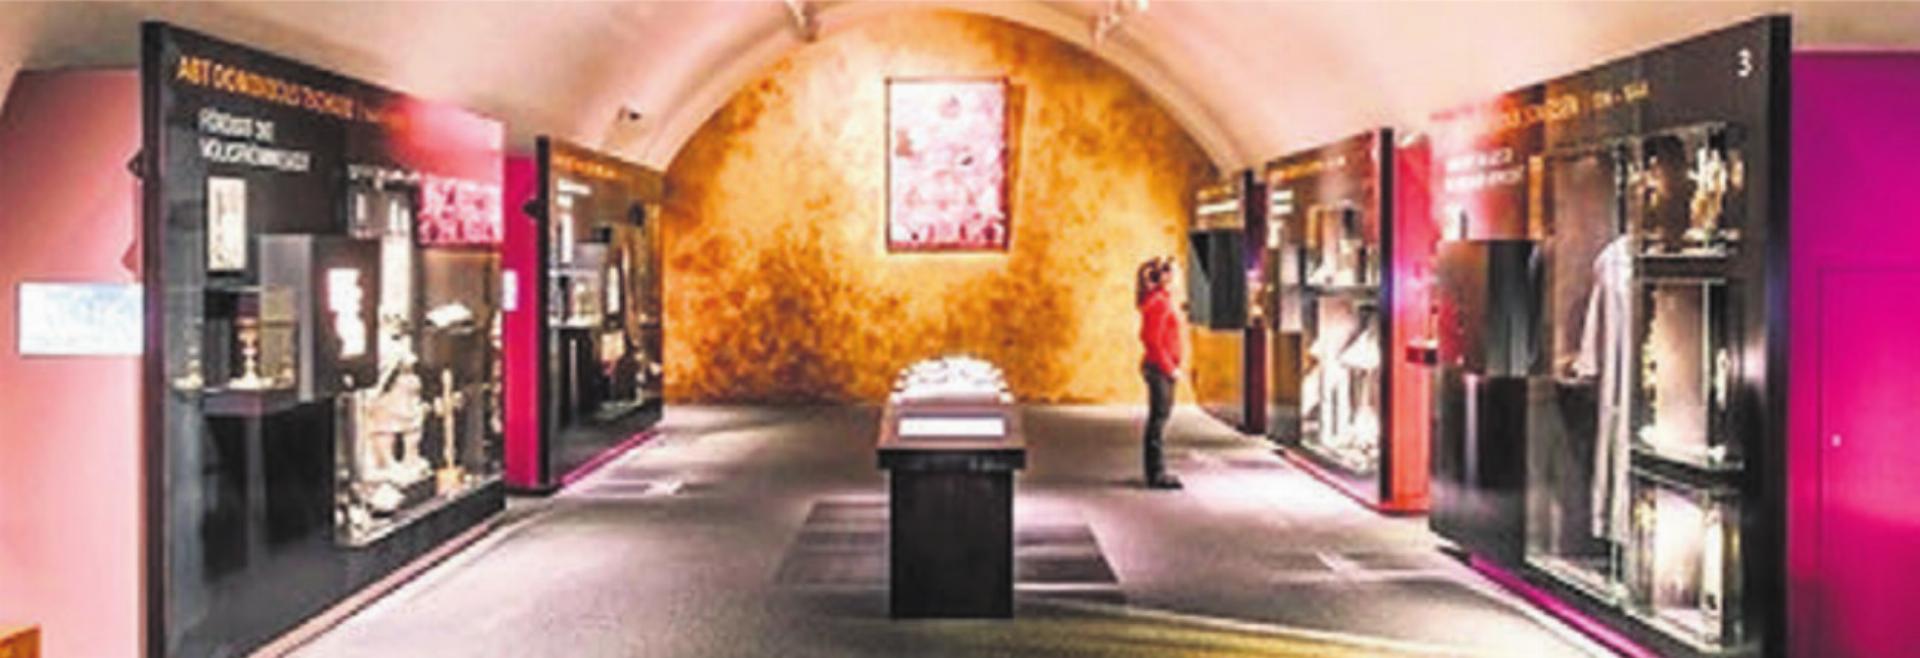 Das Museum Kloster Muri bietet spannende Einblicke. Bild: zg